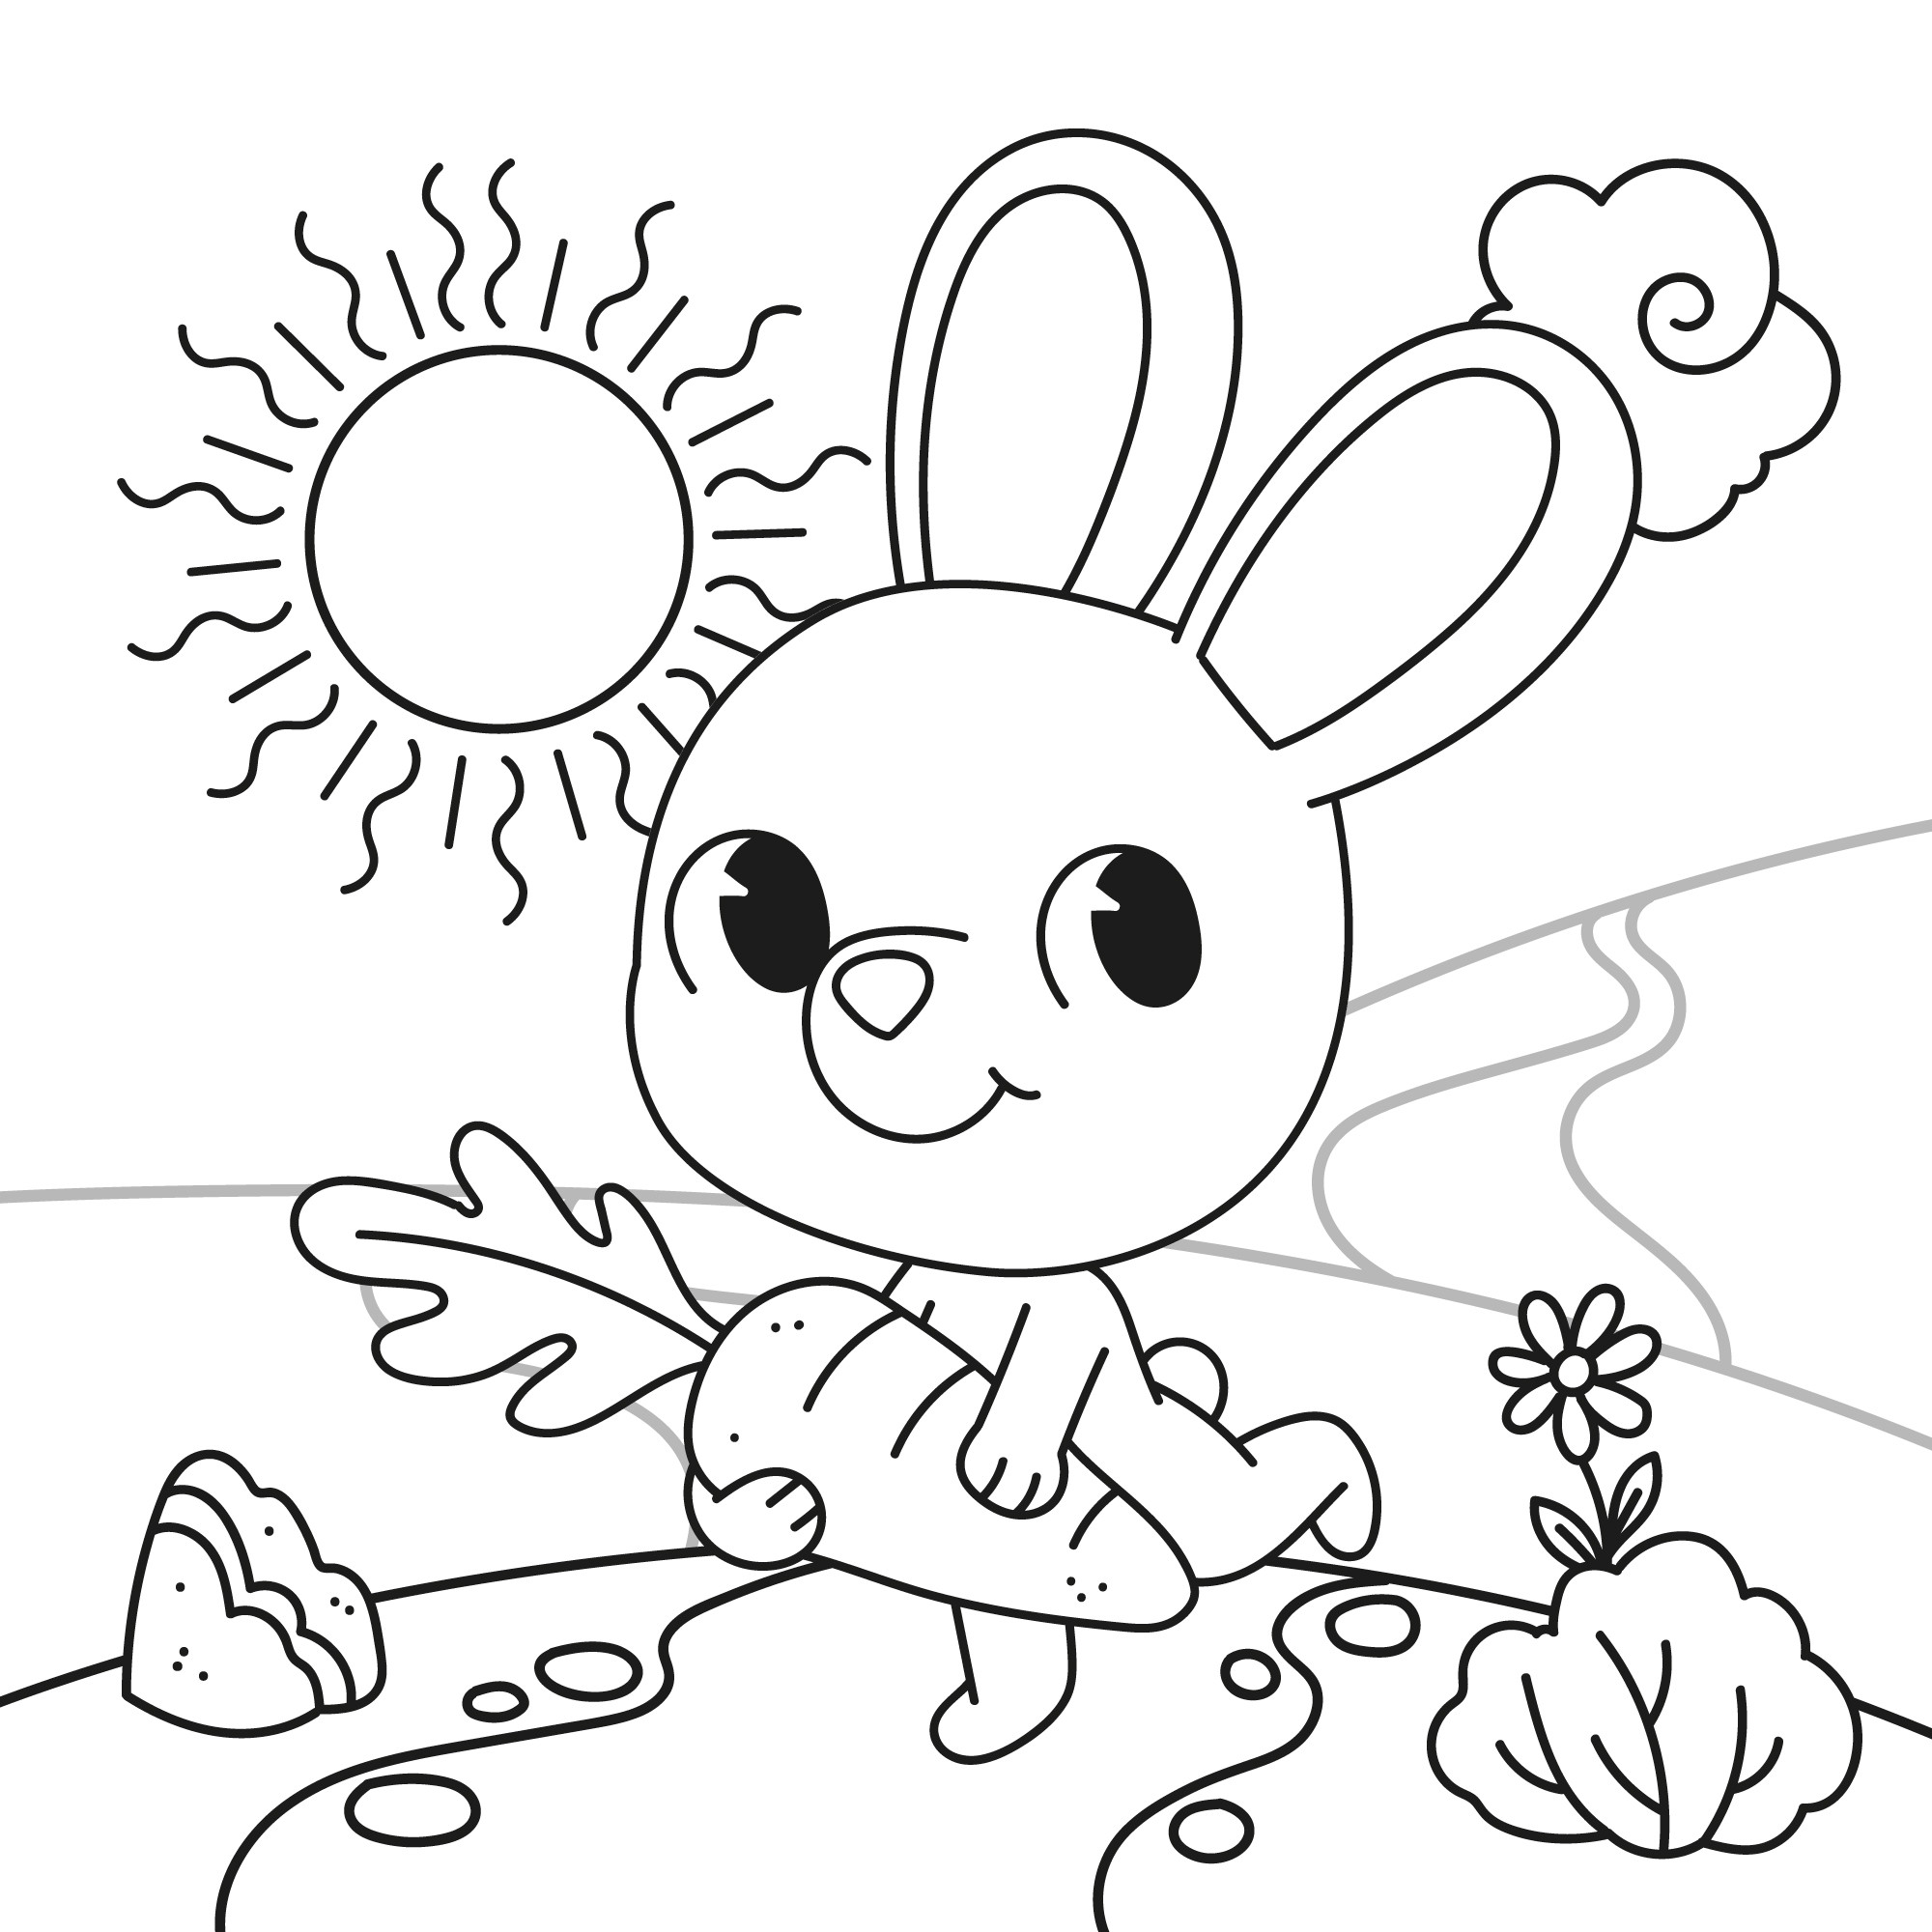 Раскраска для детей: игрушечный зайка бежит по поляне с морковкой в лапках